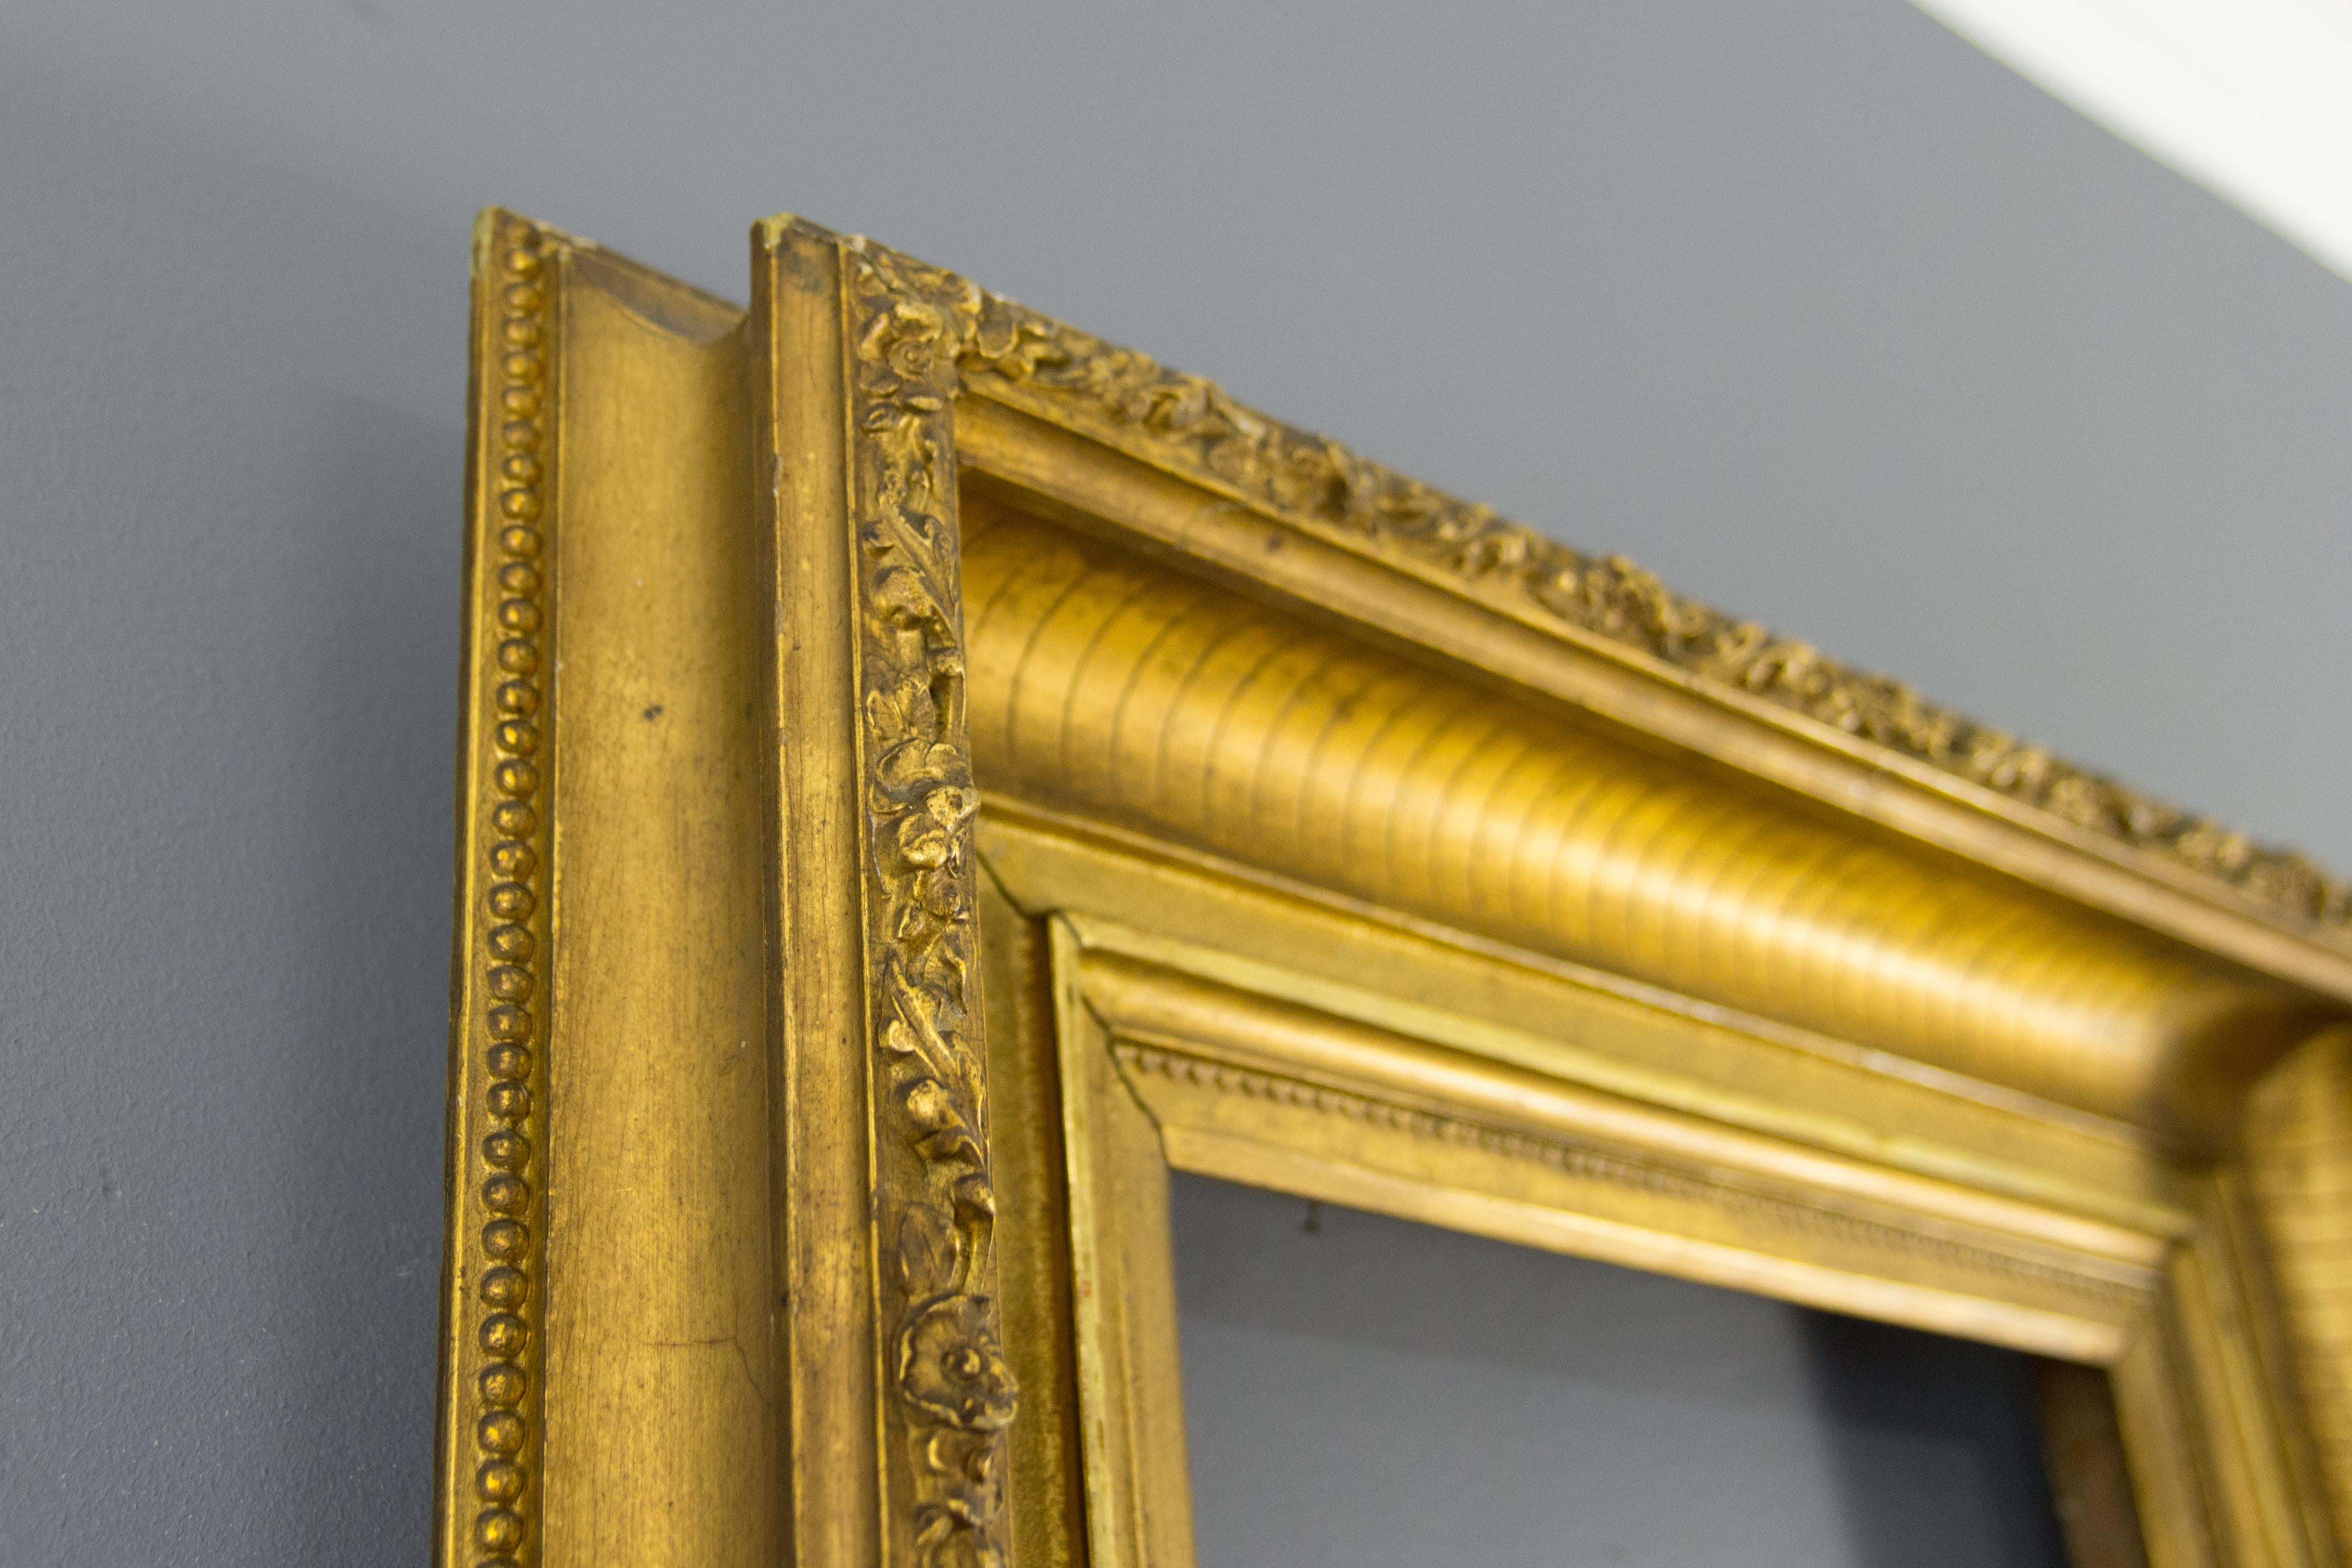 Magnifique cadre de tableau ou de miroir en bois doré et gesso français, fin du 19e siècle.
Ce cadre ancien spectaculaire présente une bordure cannelée, décorée de fleurs et de feuilles sur le bord extérieur.
Dimensions : Hauteur 54,5 cm / 21,46 in,